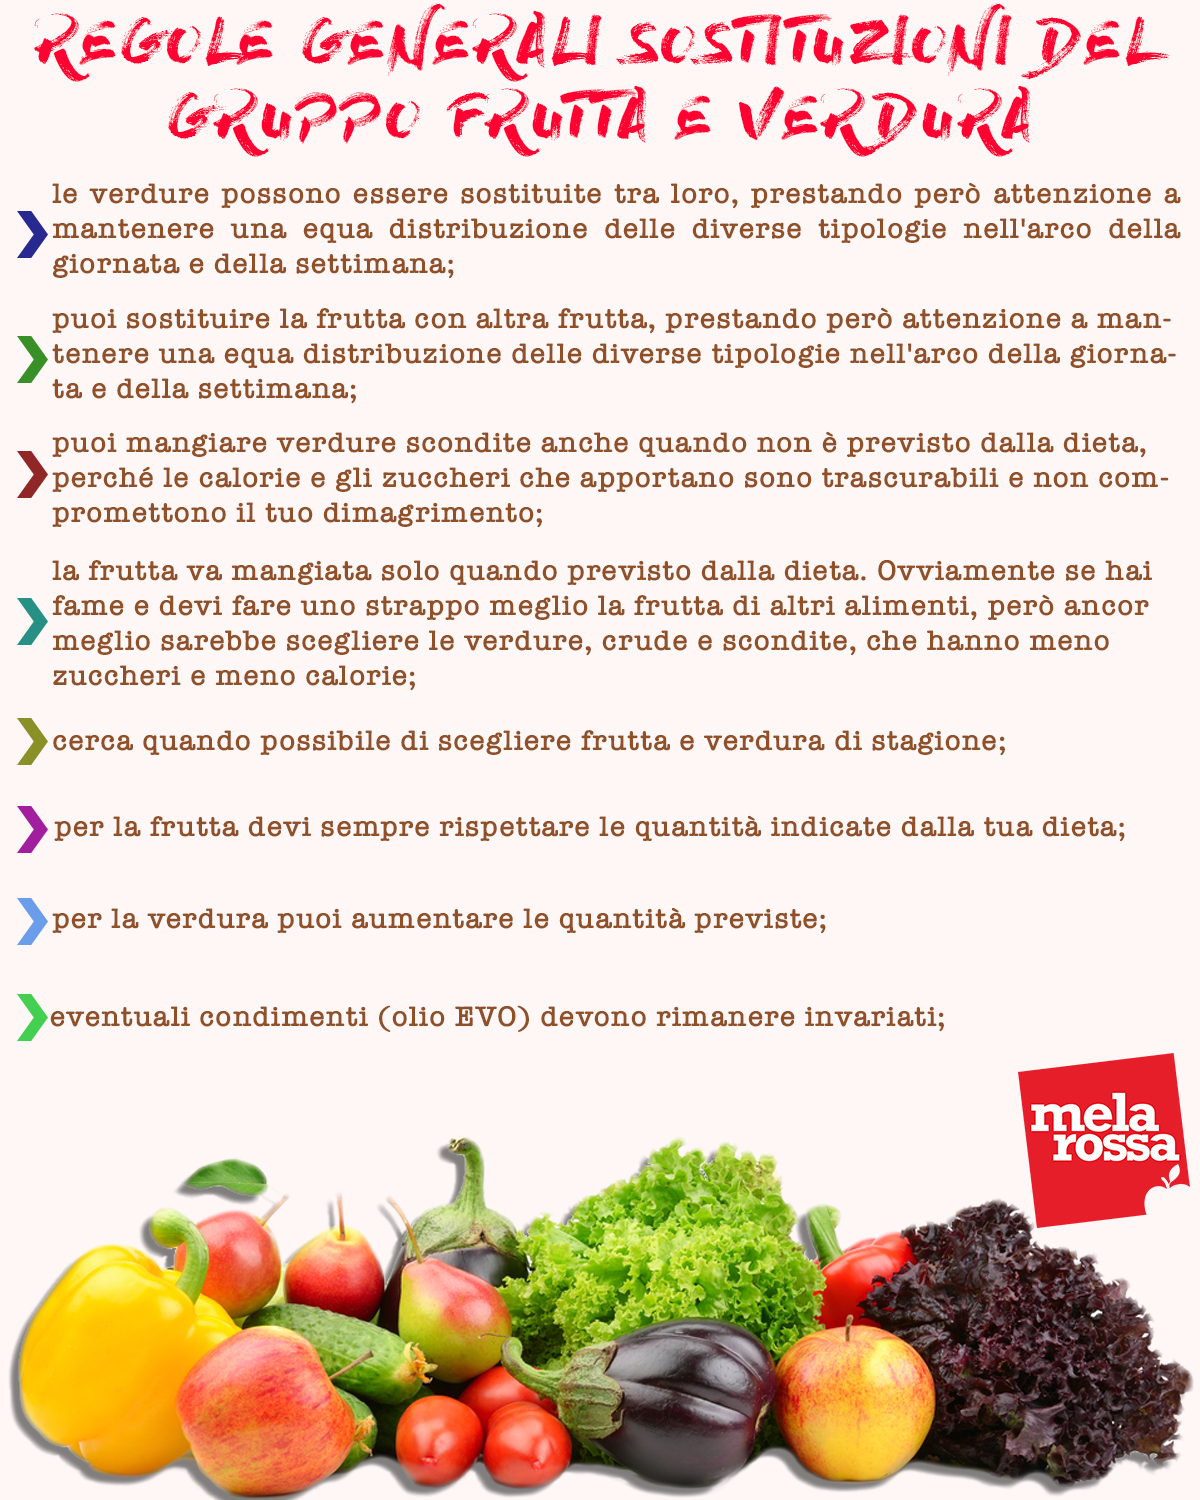 Tabella regole generali sostituzione gruppo frutta e verdura